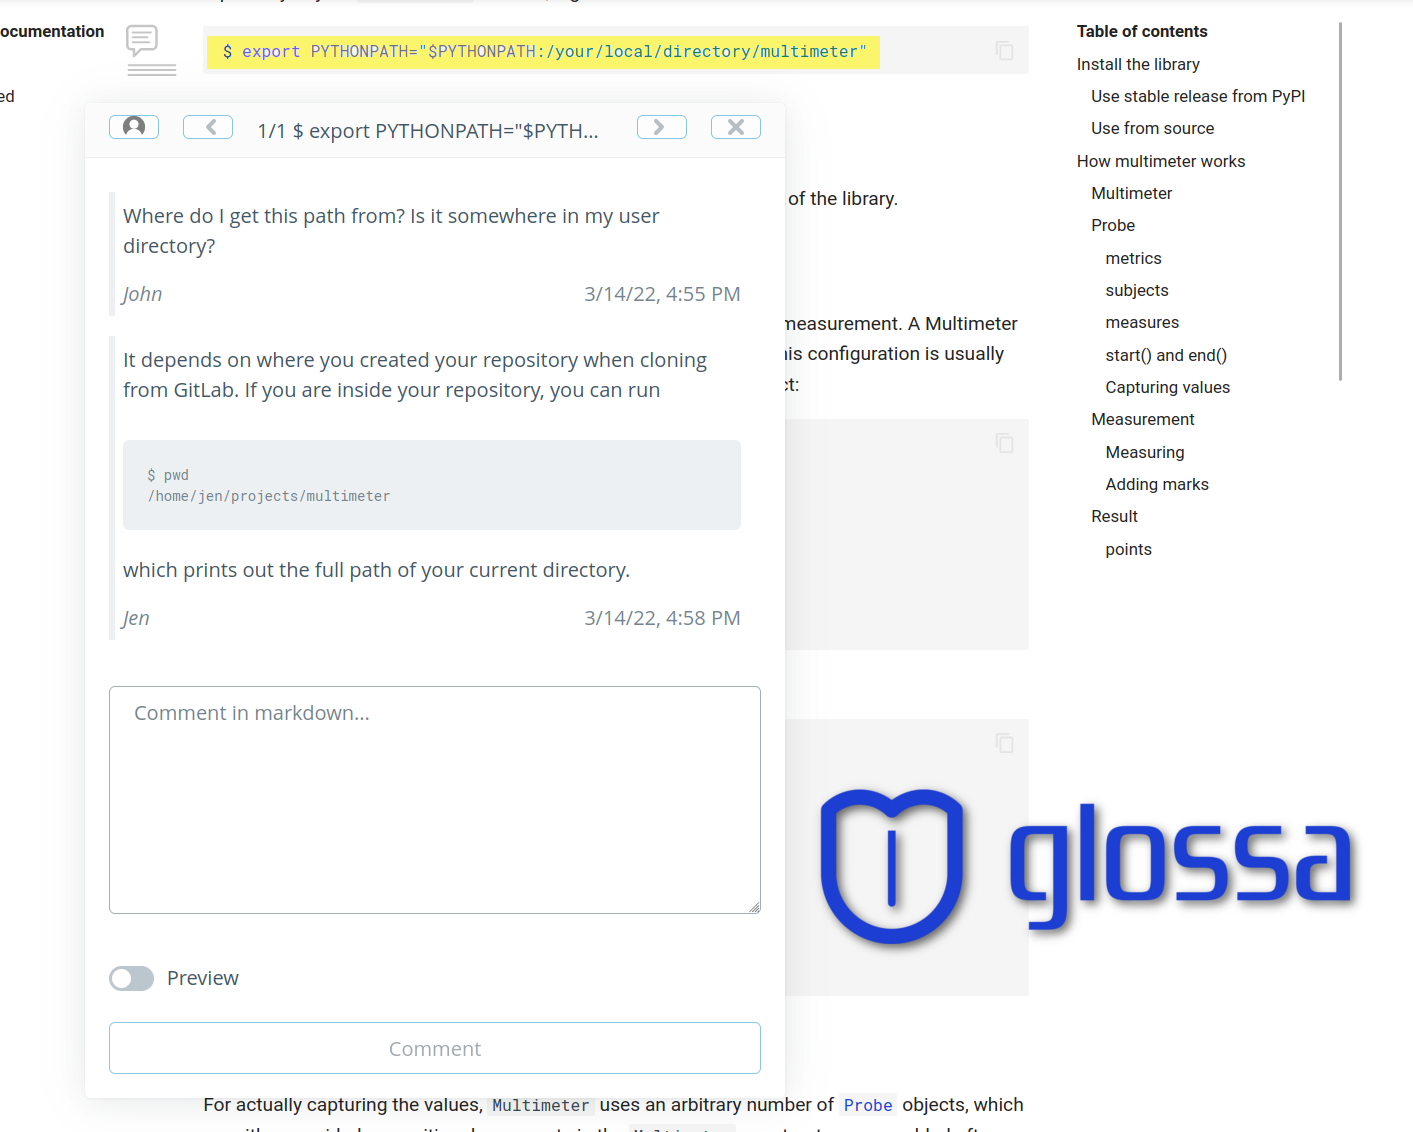 Glossa.cc comment dialog